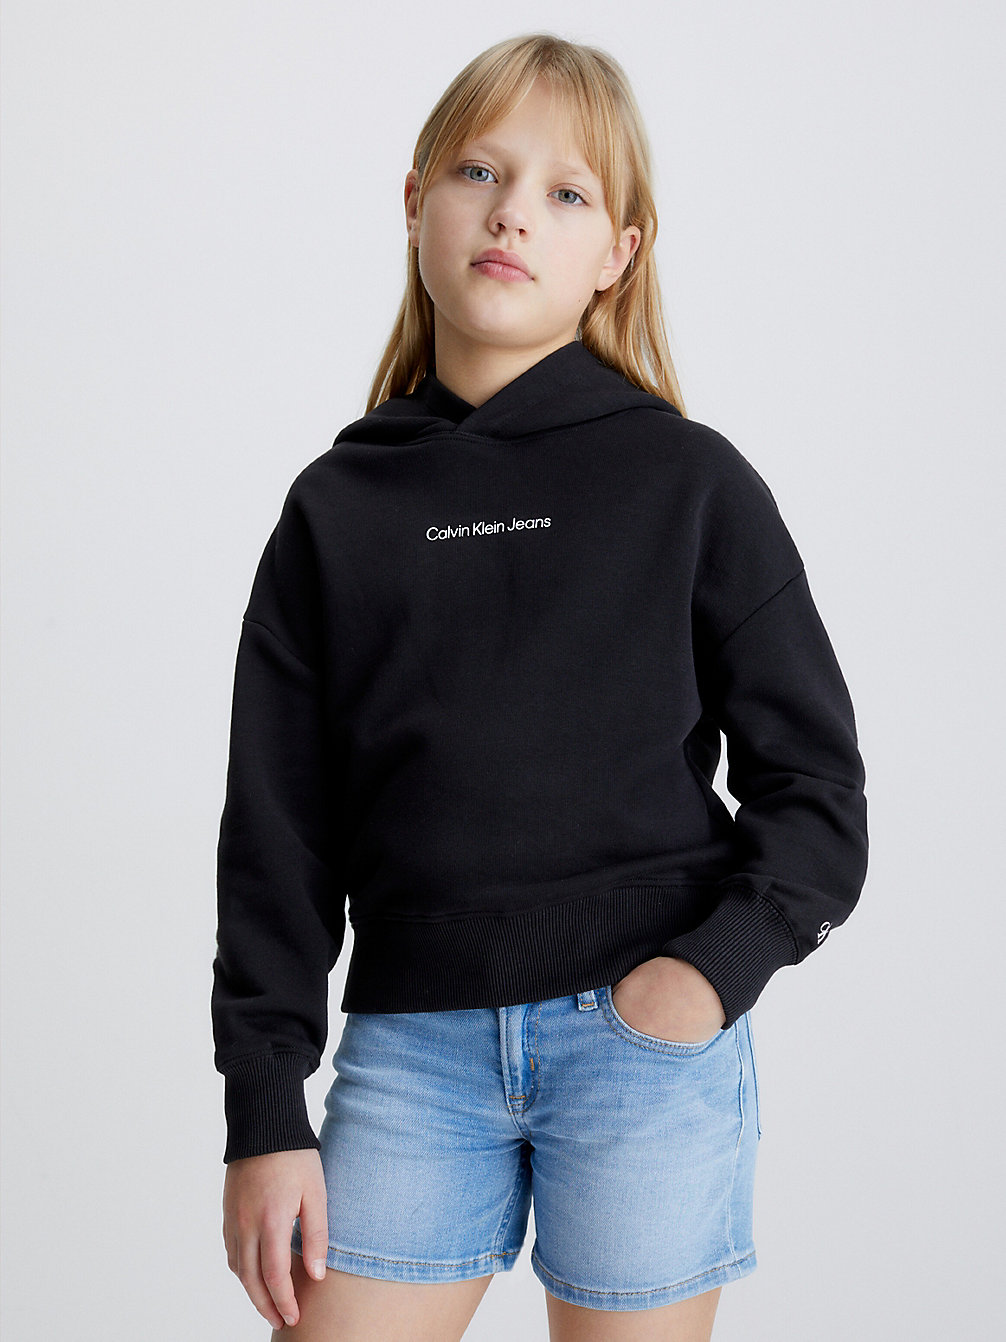 CK BLACK Oversized Hoodie undefined Maedchen Calvin Klein